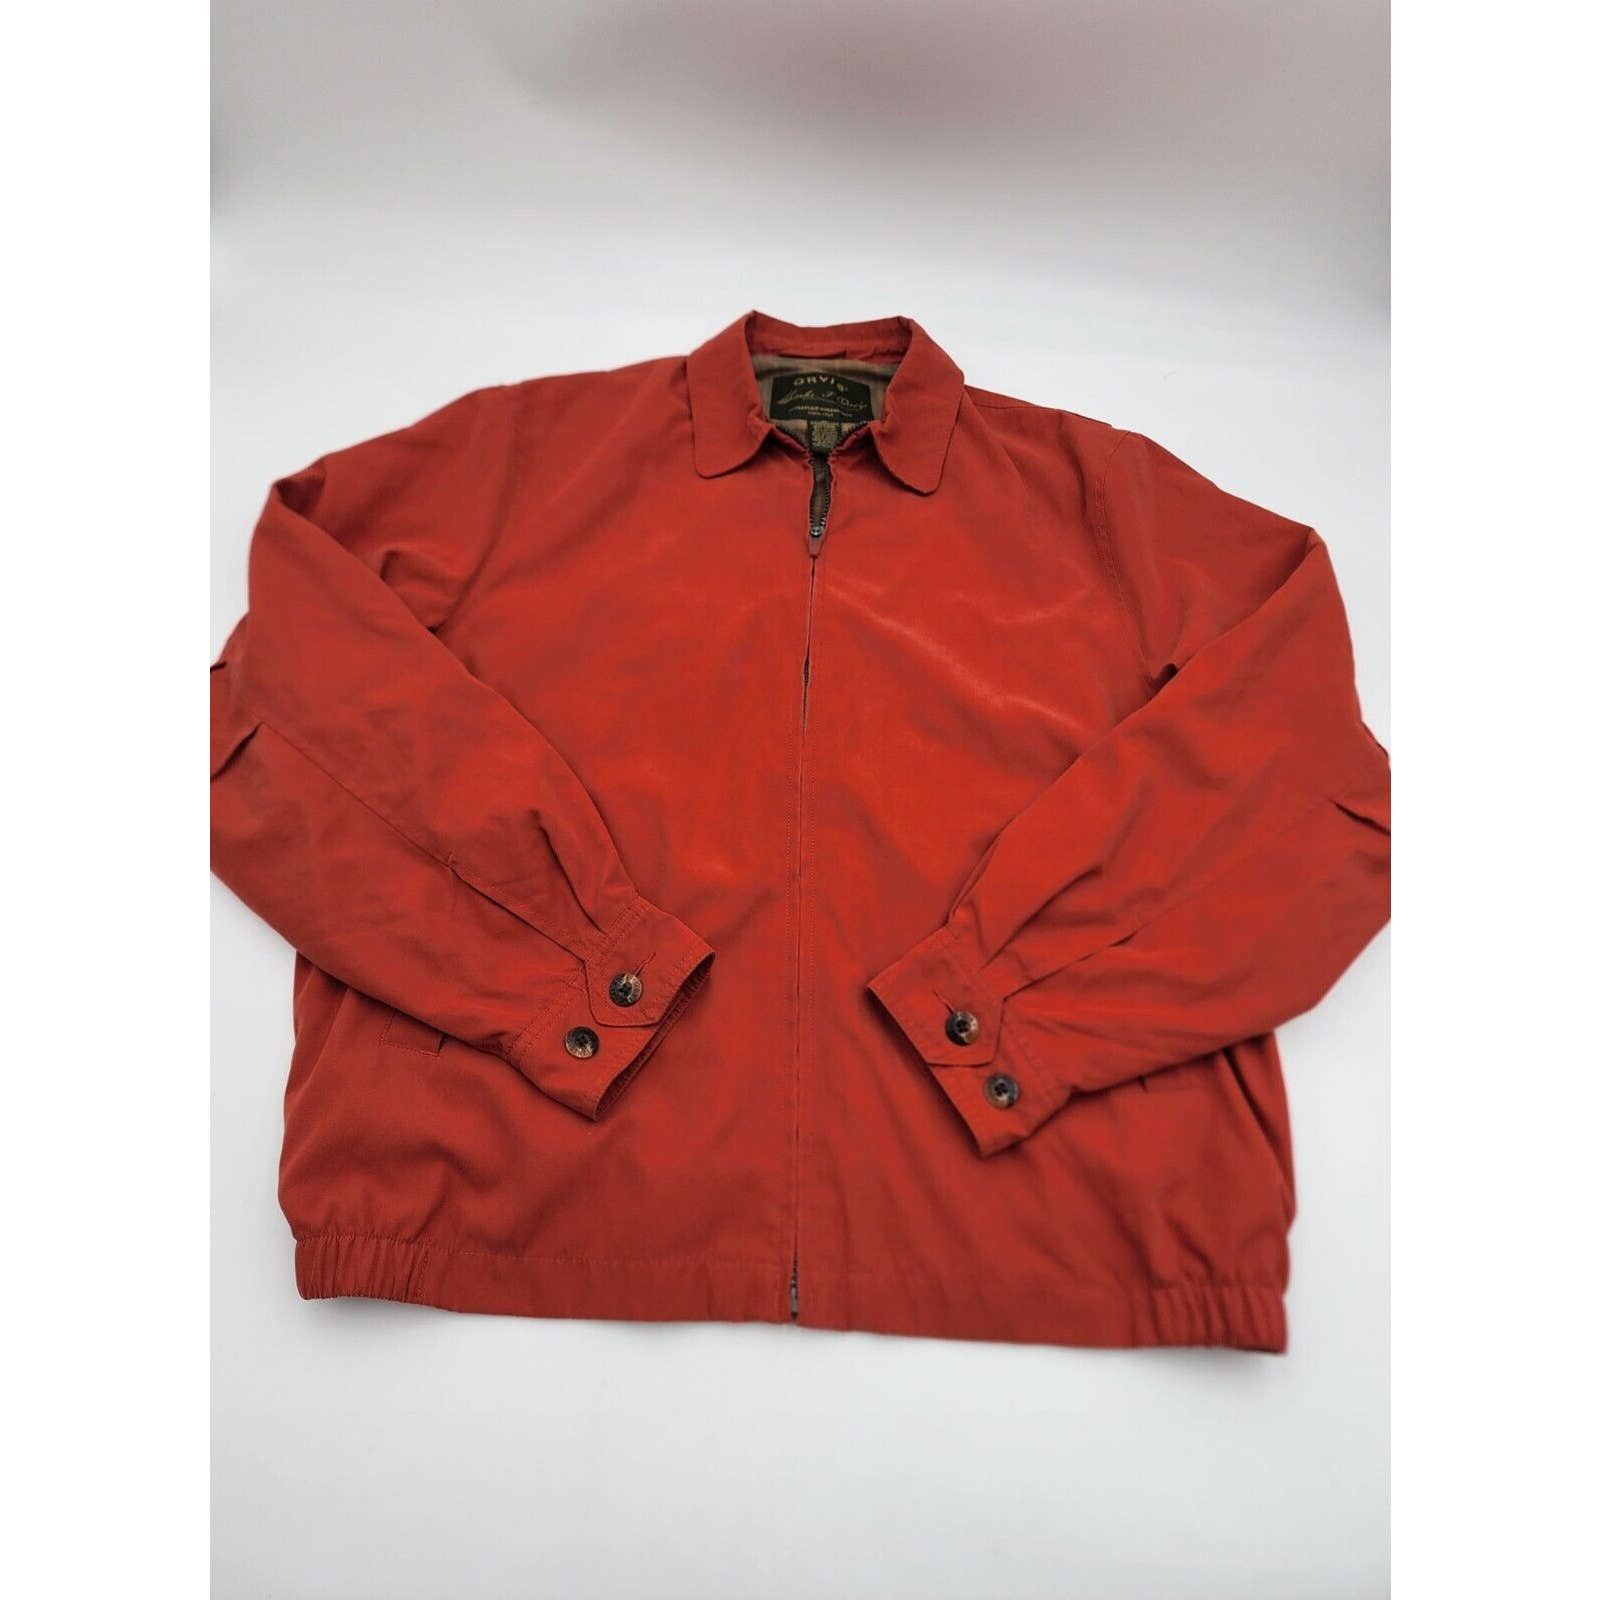 Orvis Orvis Signature Series Jacket Soft Faux Suede Burnt Orange Size US M / EU 48-50 / 2 - 9 Thumbnail